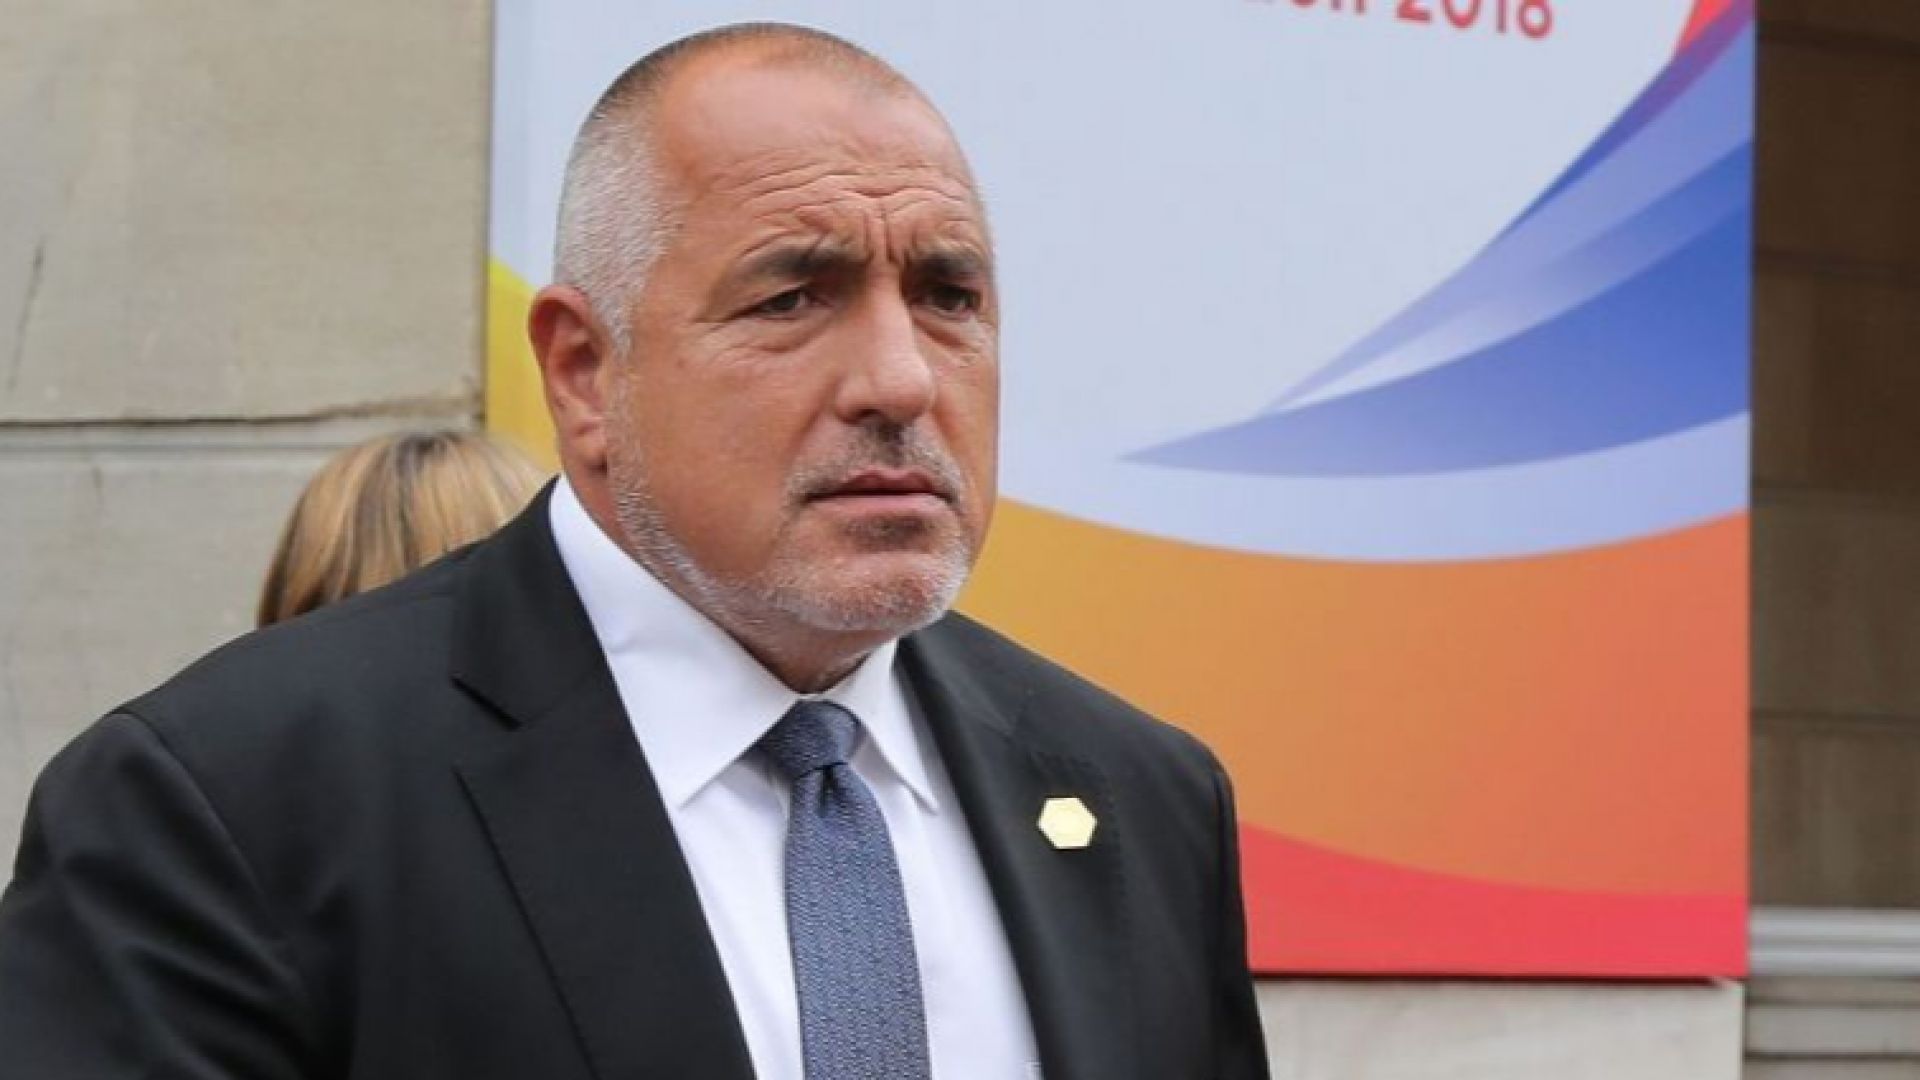 Борисов навръх Съединението: България ще бъде по-добро място, ако се поучим от миналото си